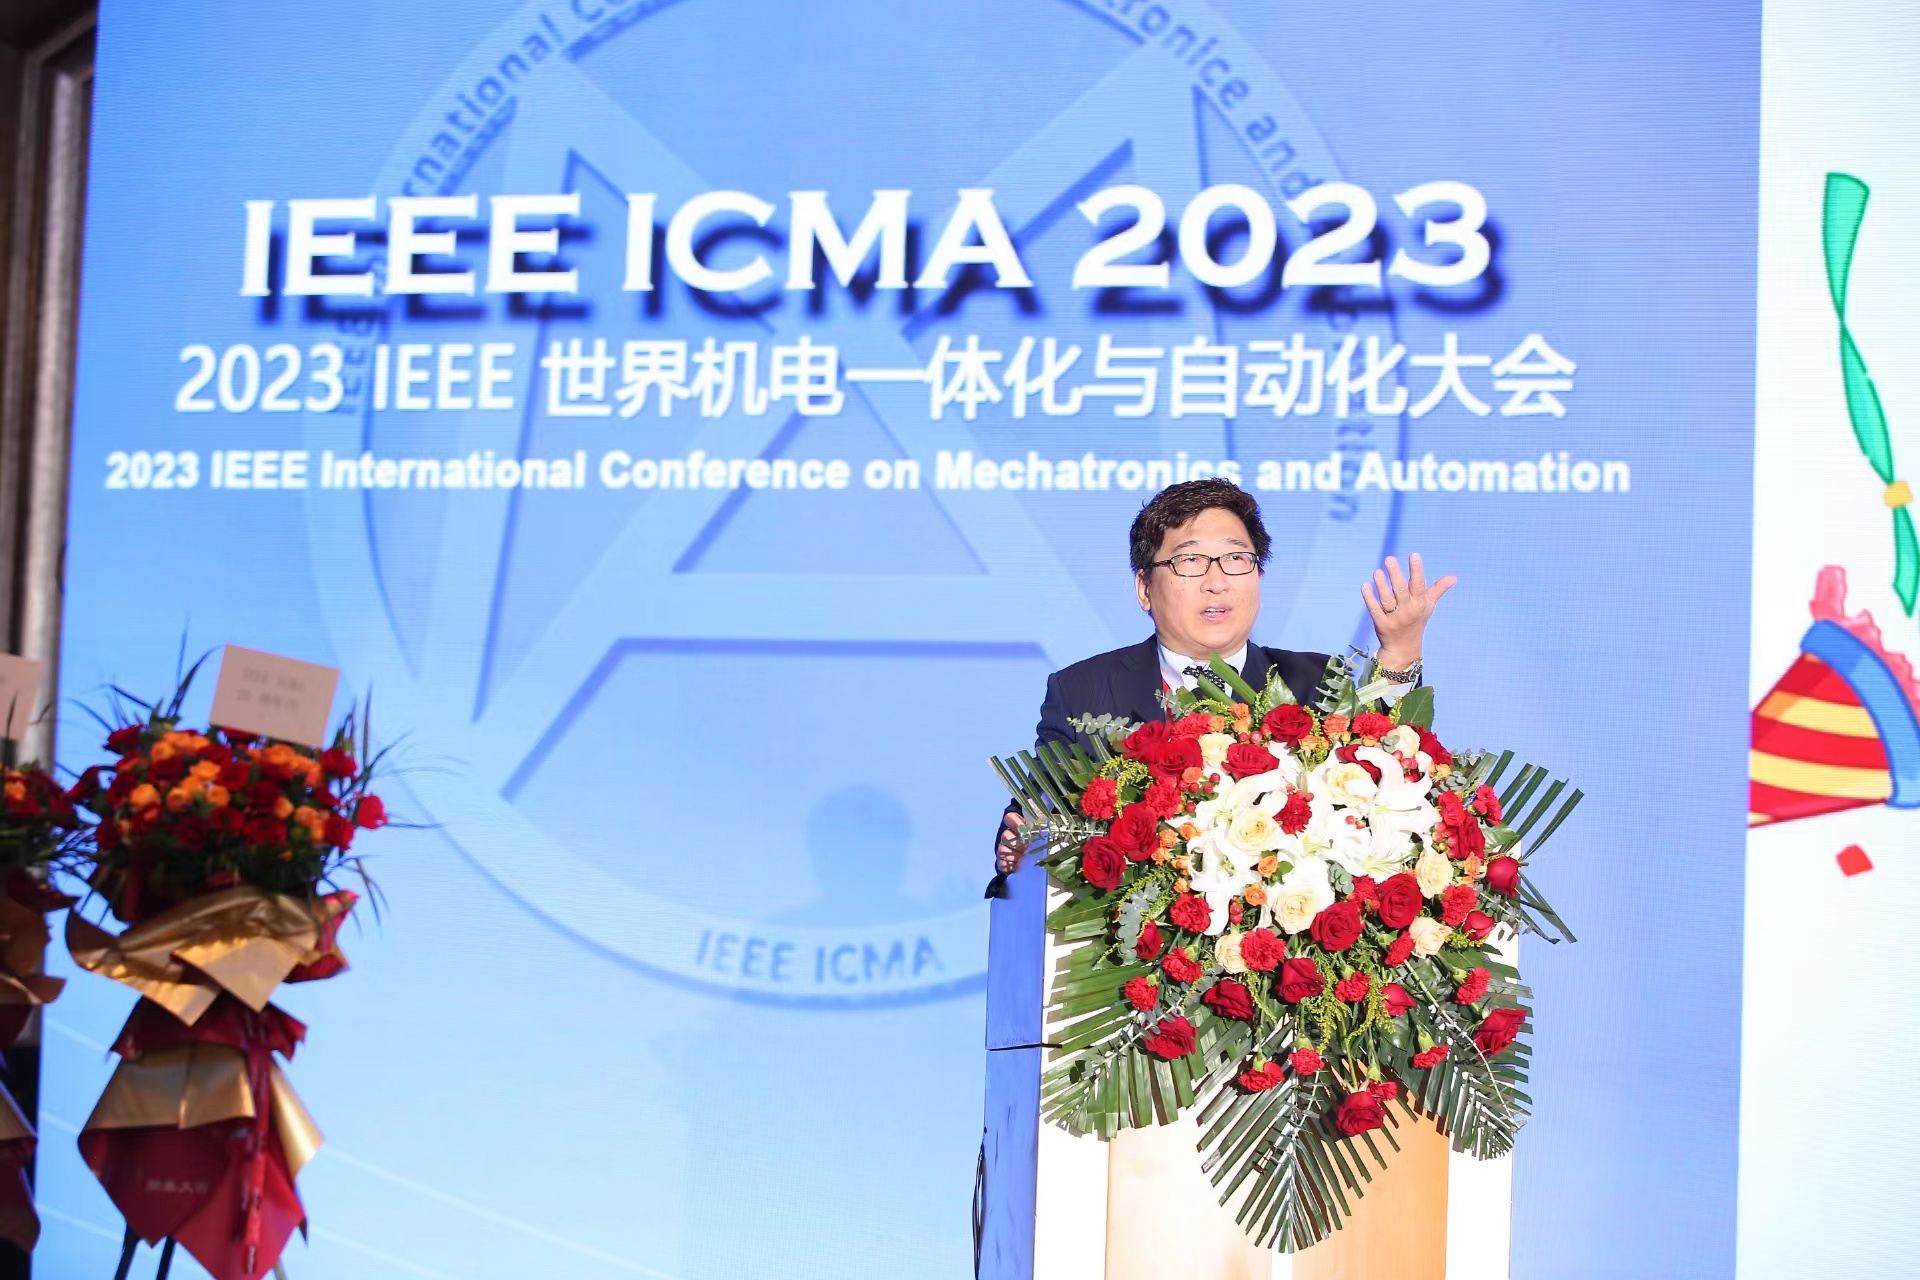 IEEE ICMA2023, Prof. Guo holding the ceremony